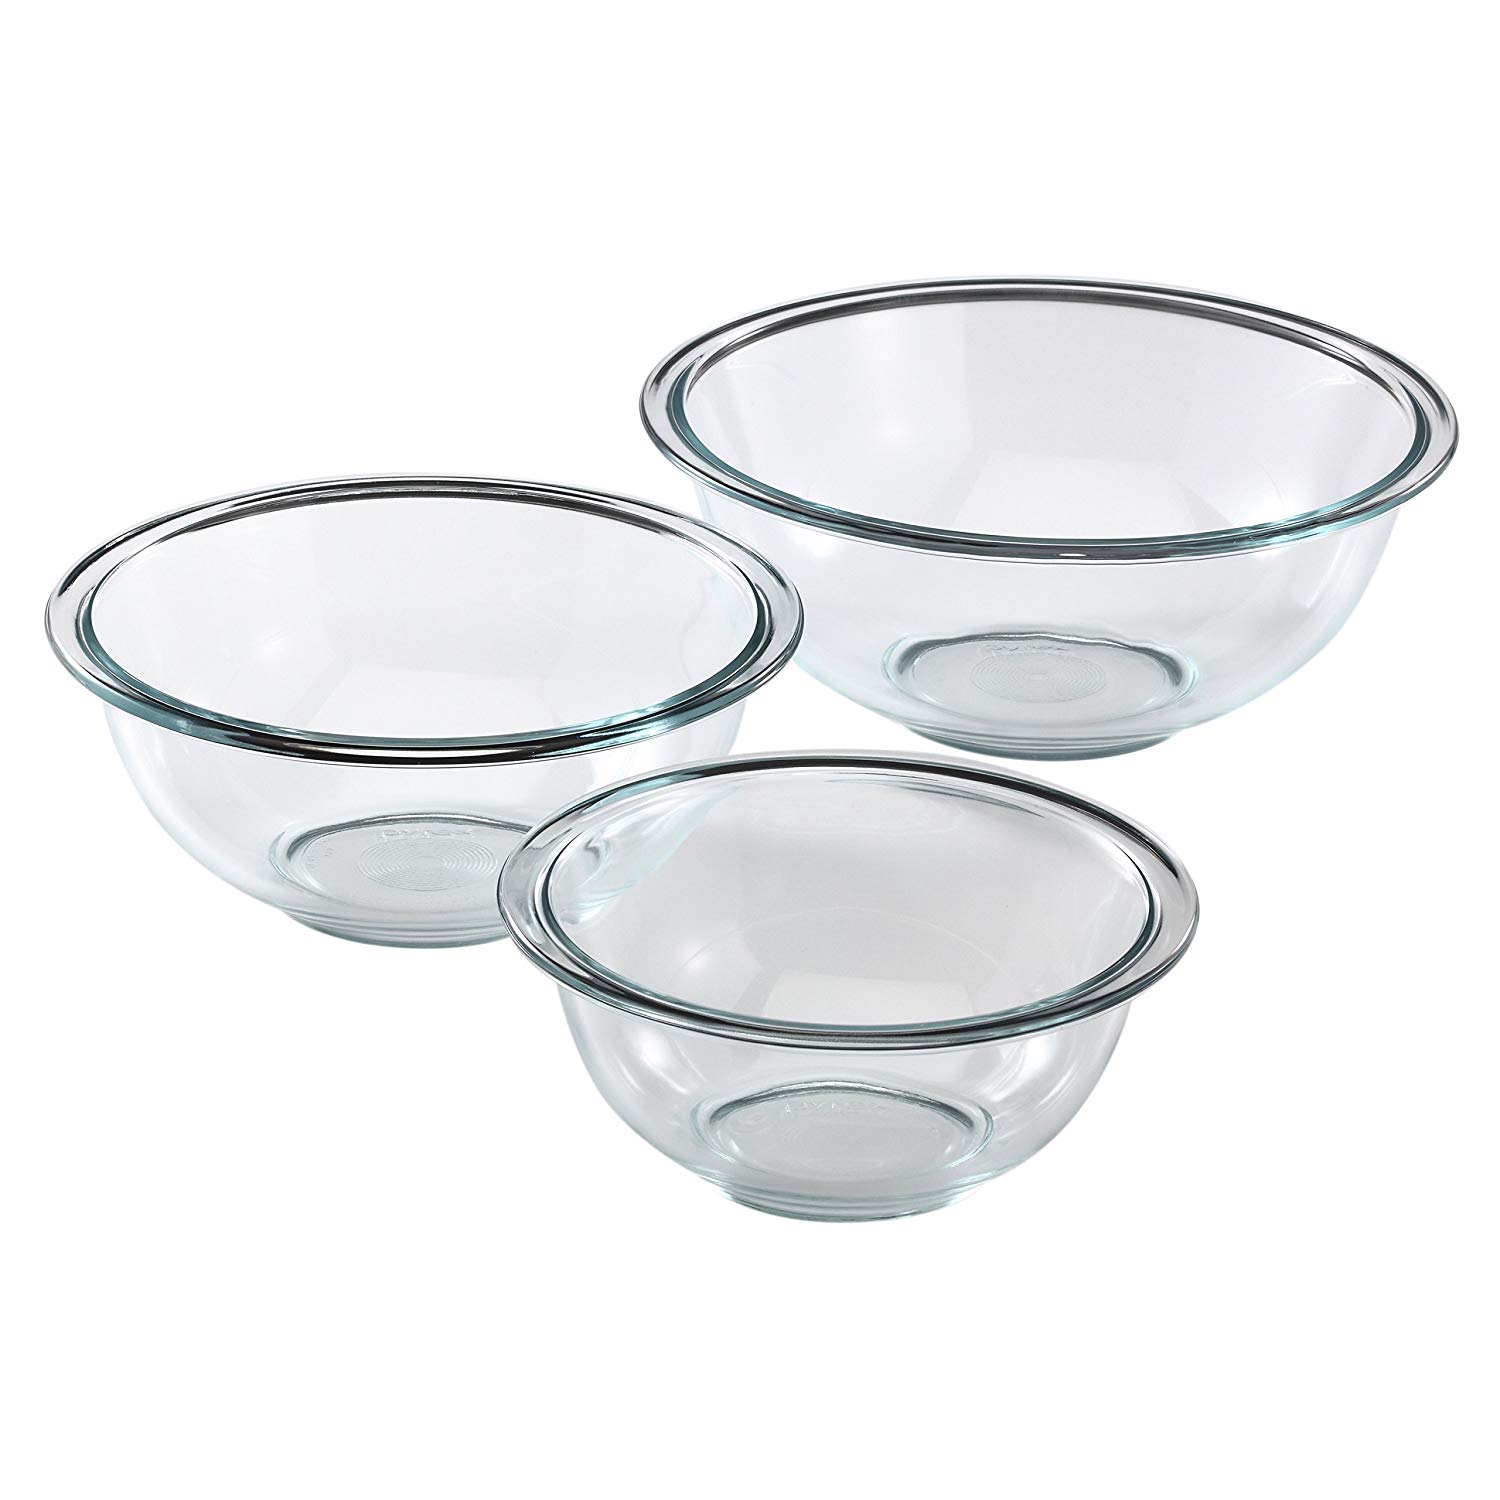 Pyrex Glass Mixing Bowl Set (3-Piece) $12.92 (REG $43.00)